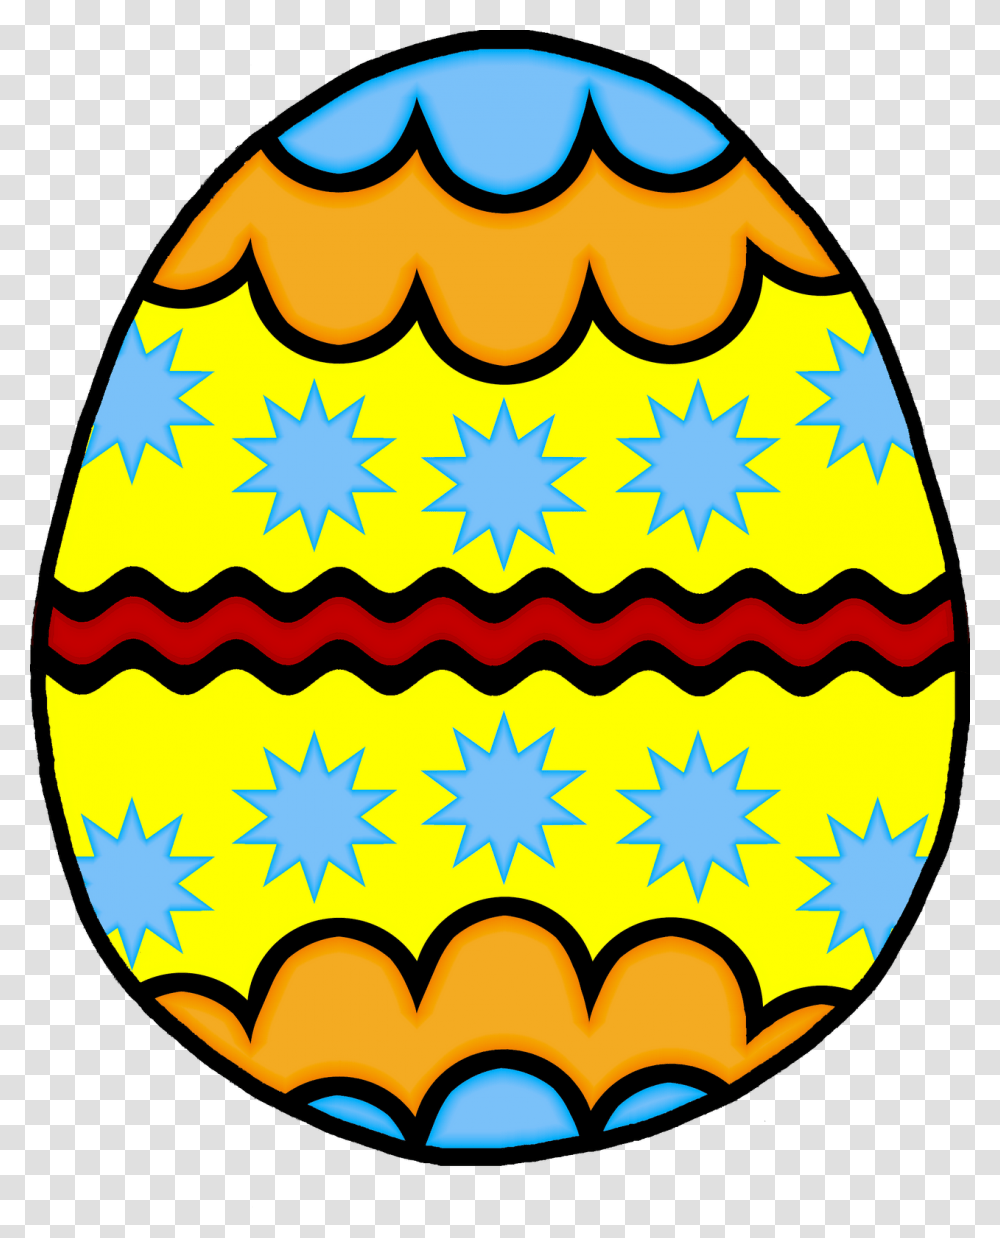 Category Clip Art, Food, Egg, Easter Egg Transparent Png